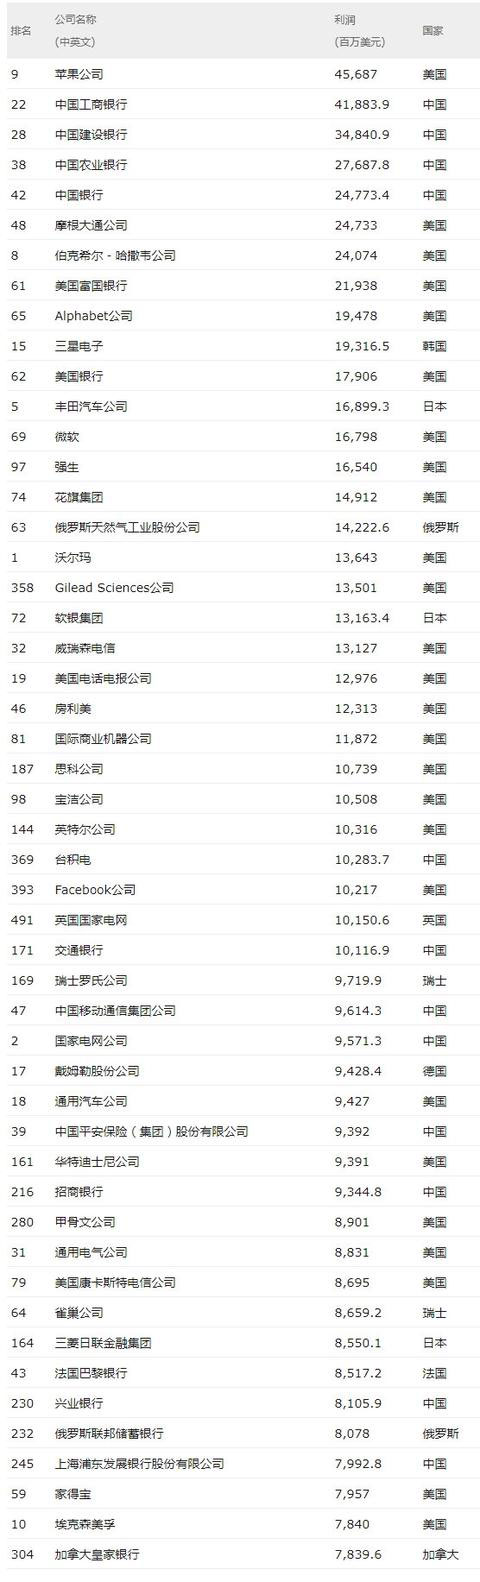 福布斯中国畅销书作家收入排行榜_2011福布斯收入榜_福布斯中国名人收入榜